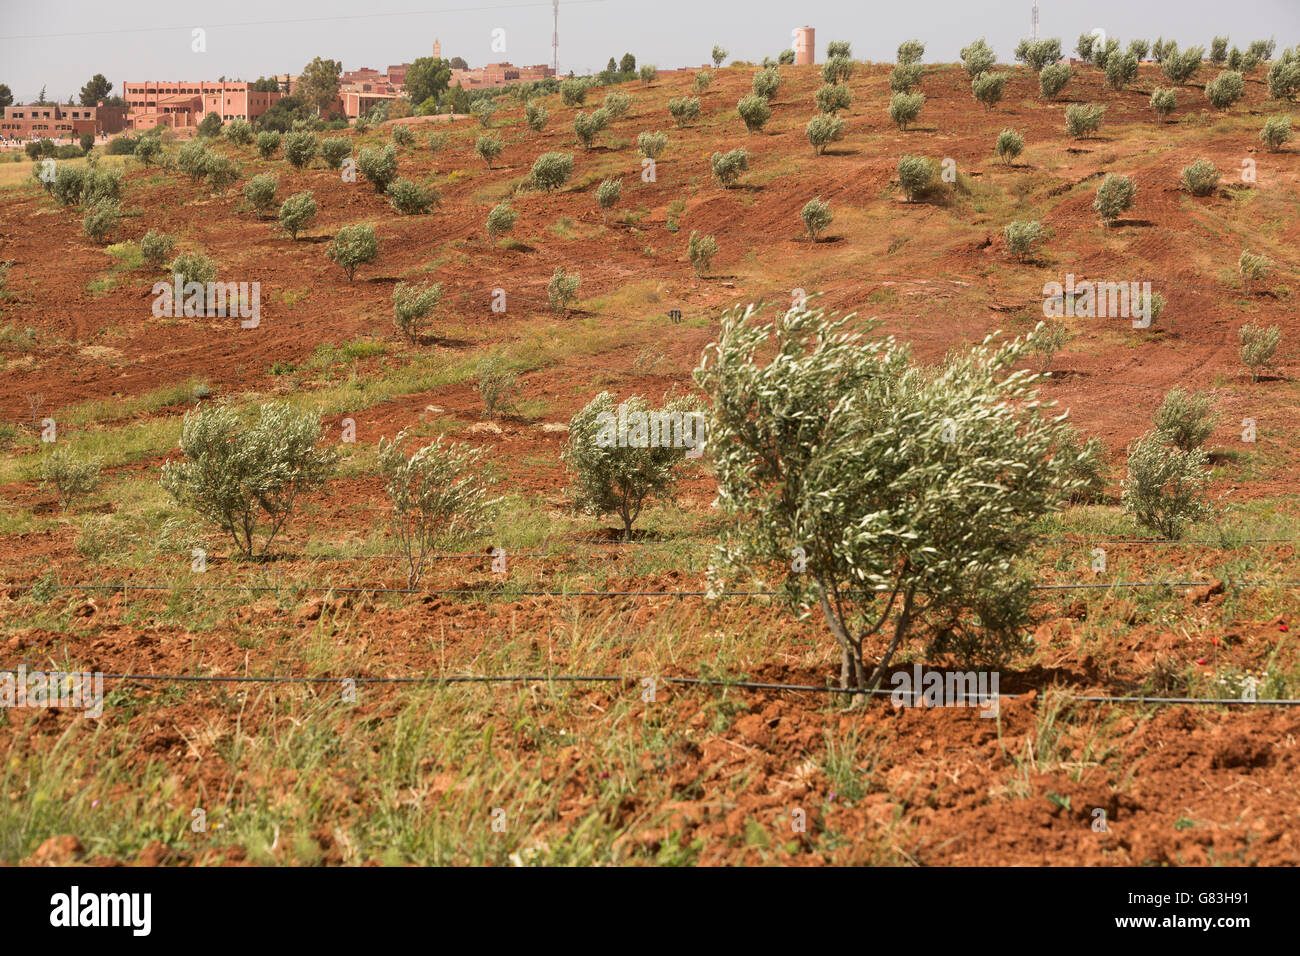 Un arbre d'olive grove est irriguée à l'extérieur de la ville de S'Hak, au centre du Maroc. Banque D'Images